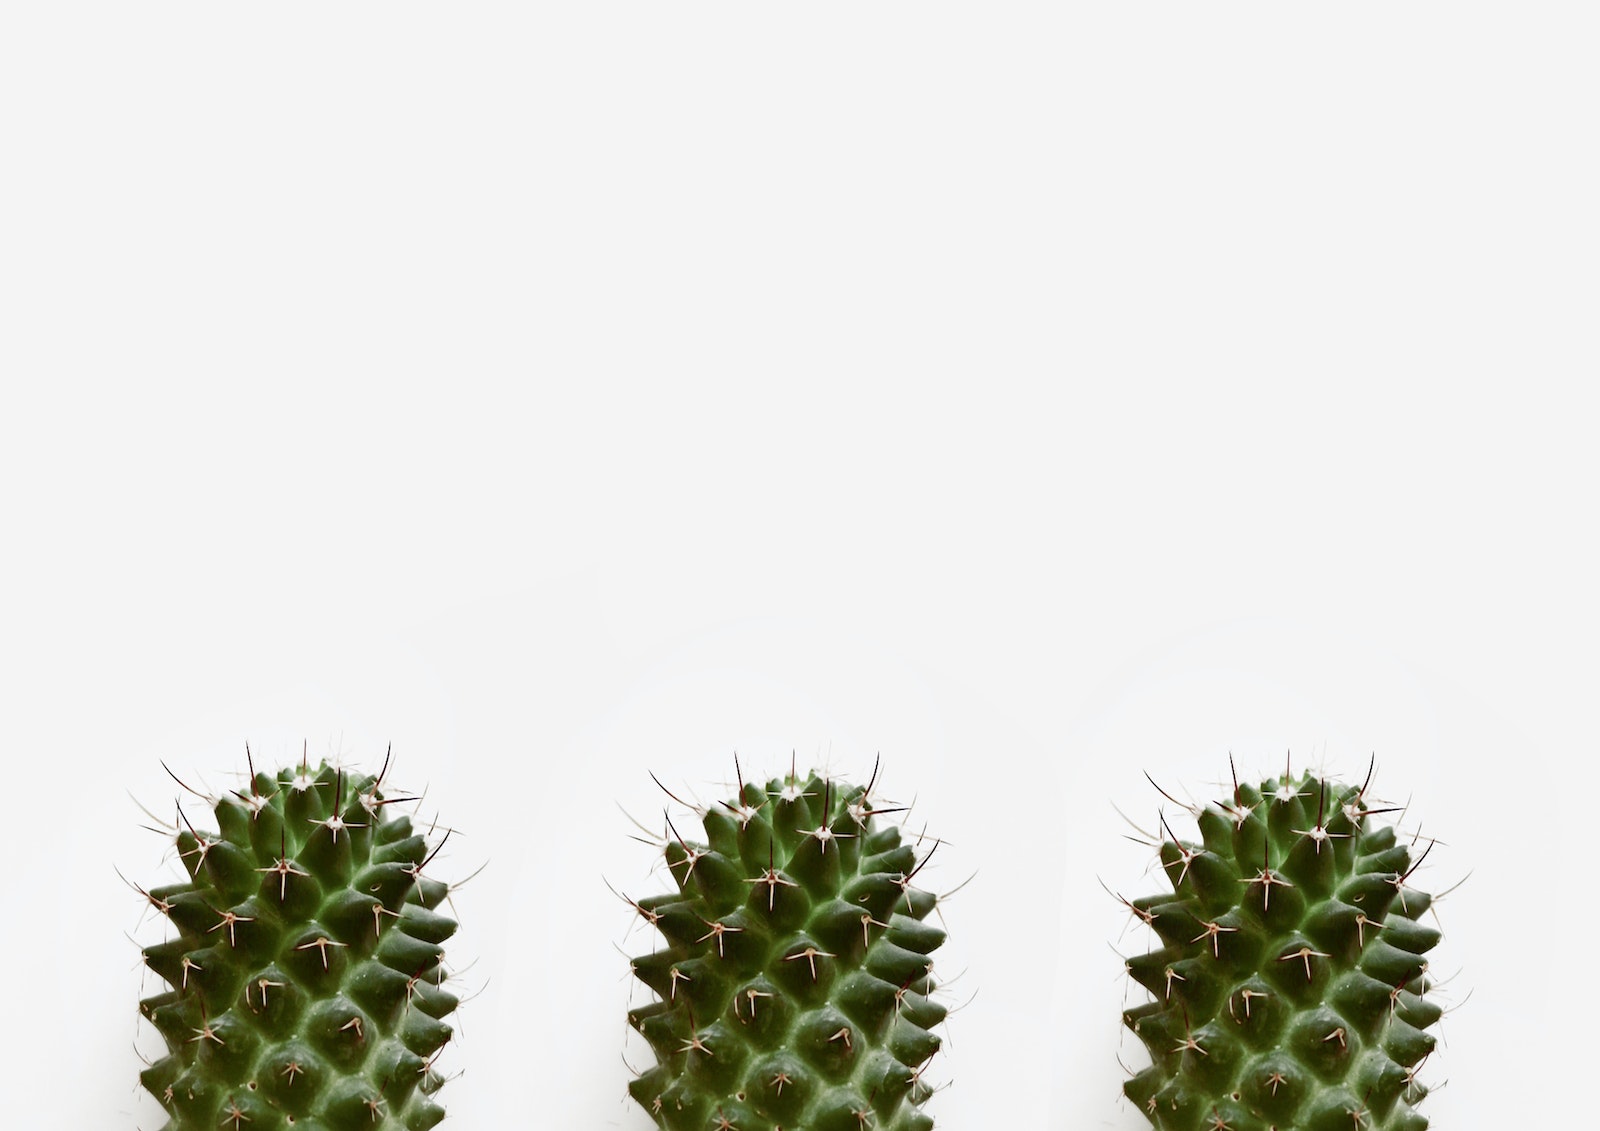 Close-Up Photo of Three Cactus